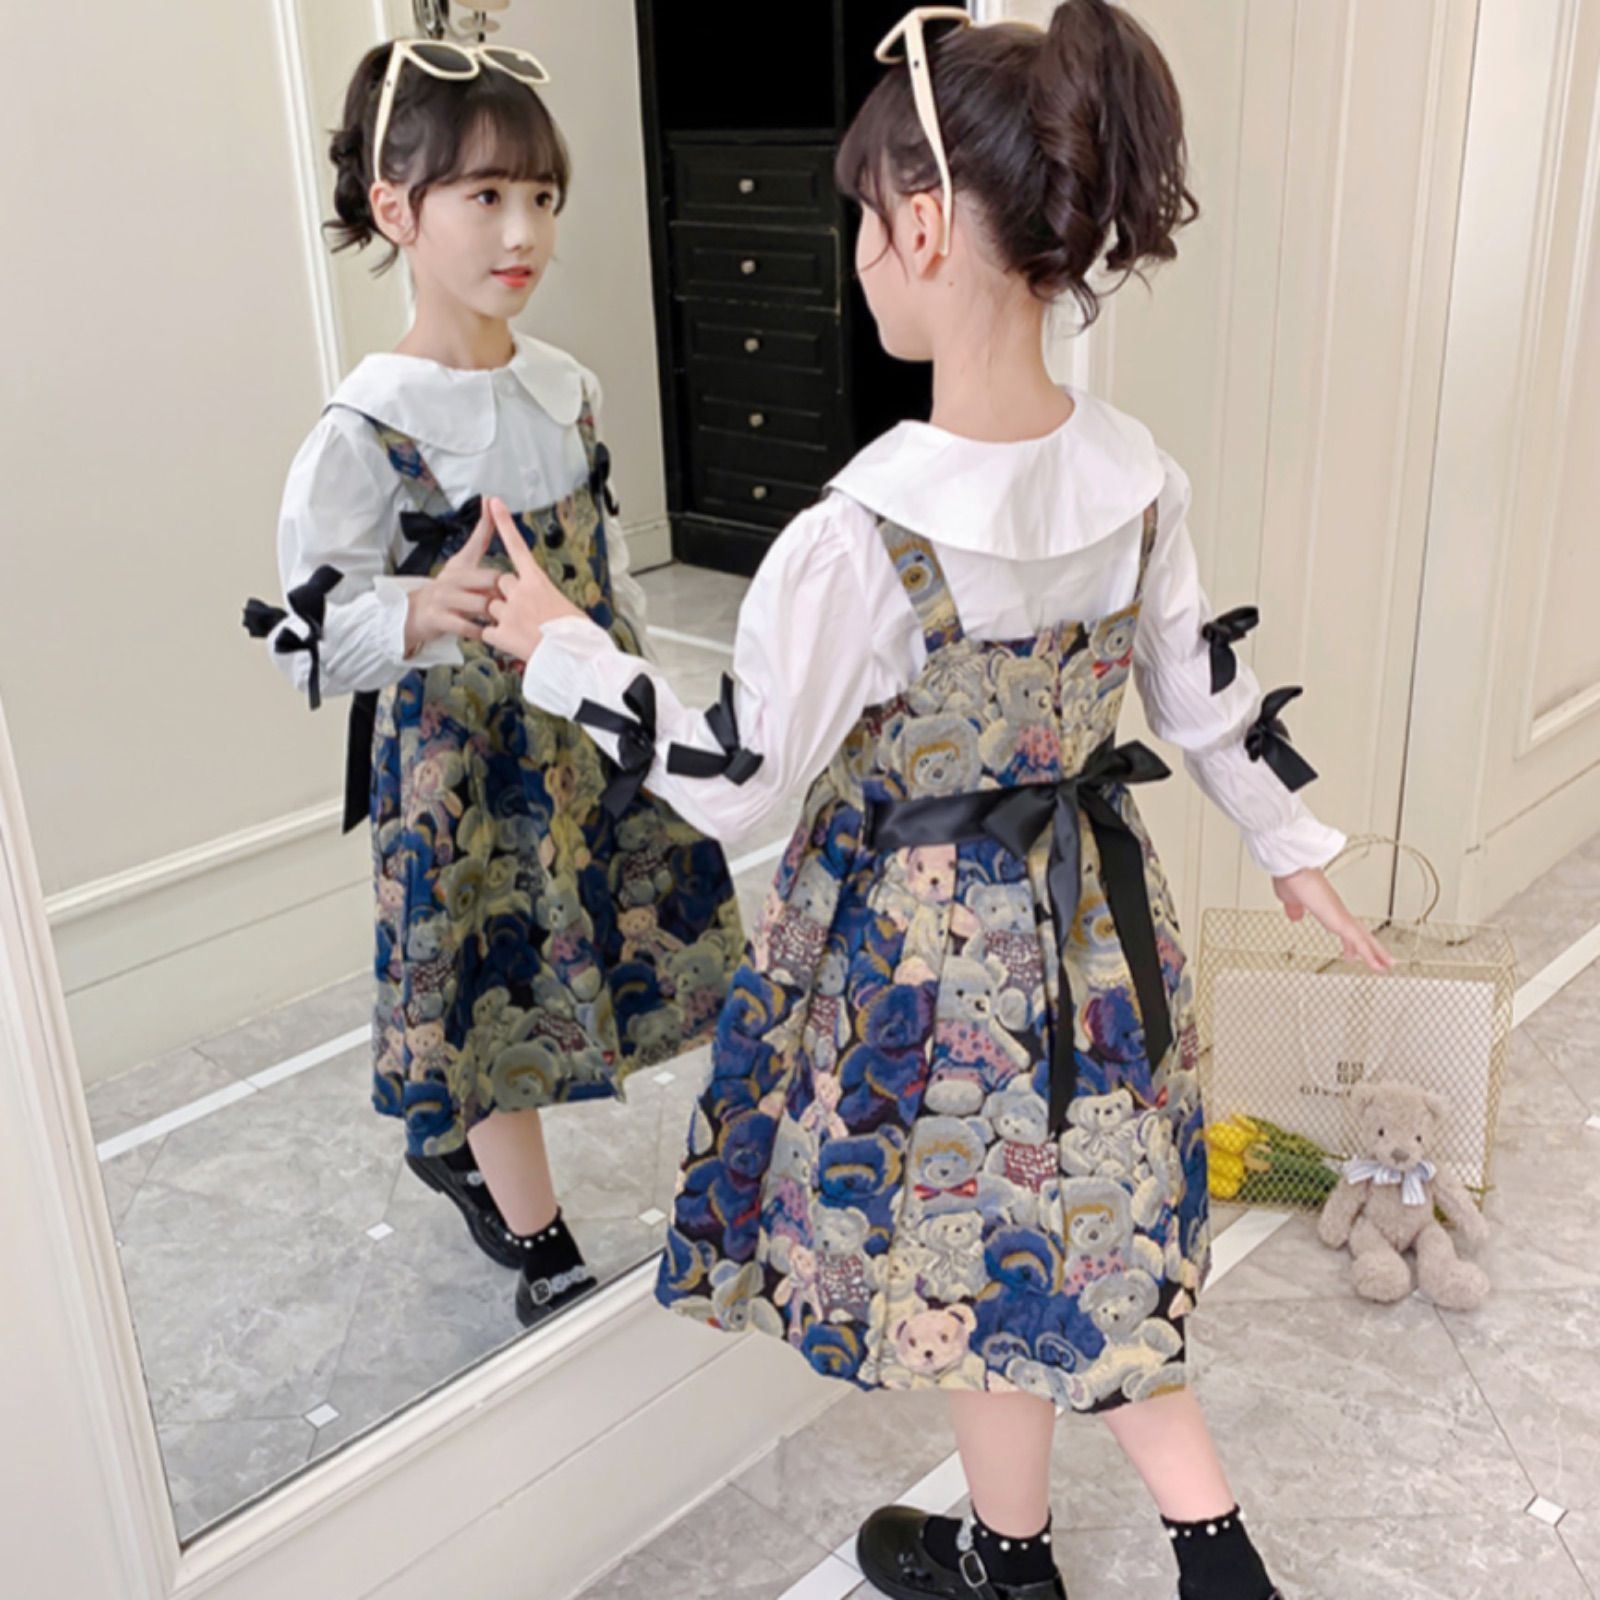 【残り1点限り】韓国子供服 120 女の子 ドレス セットアップ ワンピース スカート キッズ服 上下セット 白 シャツ